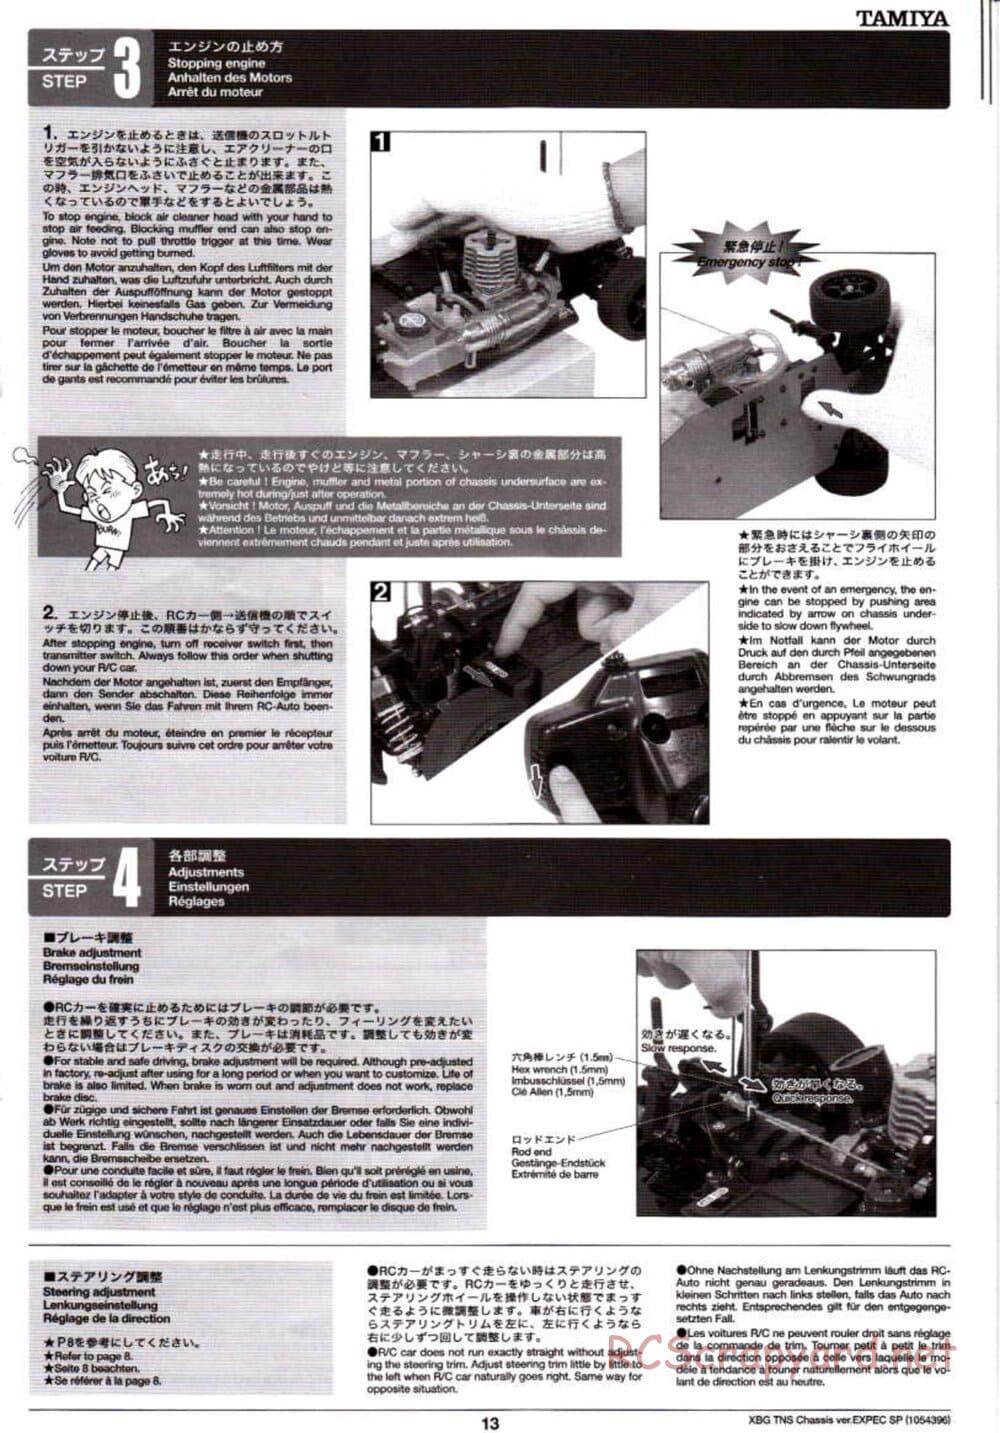 Tamiya - TNS Chassis - Manual - Page 13